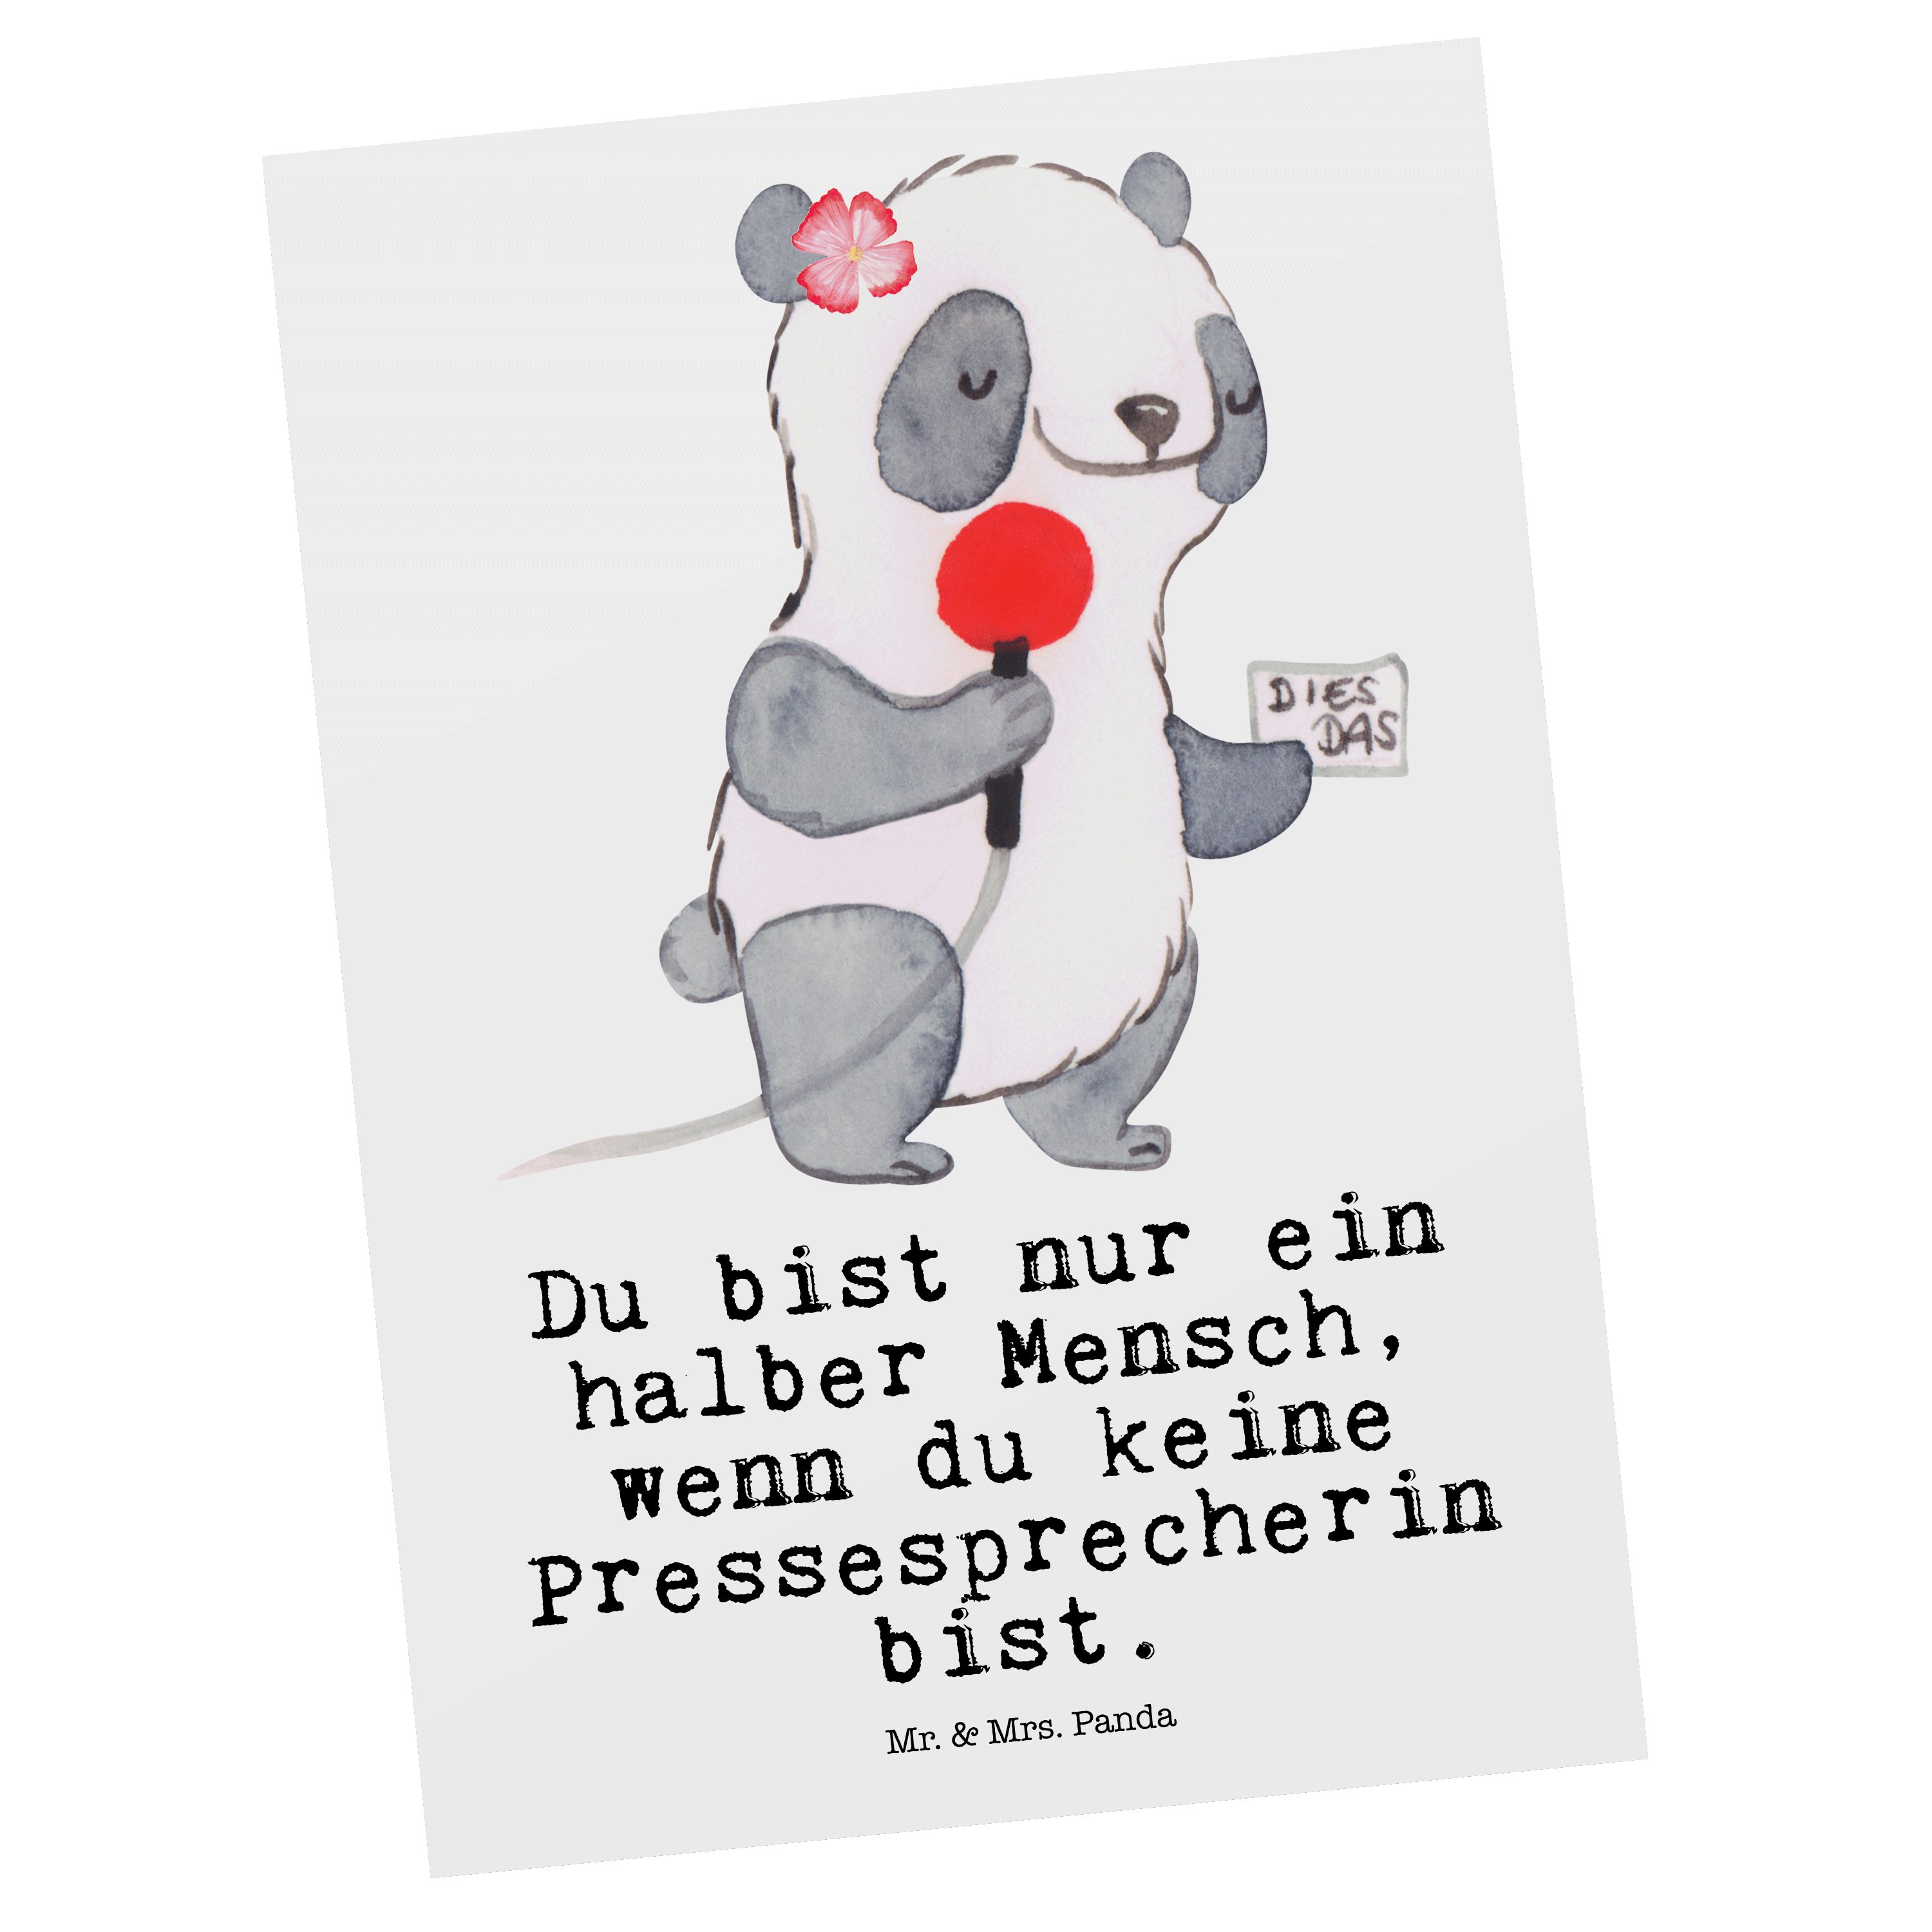 Mr. & Mrs. Panda Postkarte Pressesprecherin mit Herz - Weiß - Geschenk, Grußkarte, Arbeitskolleg